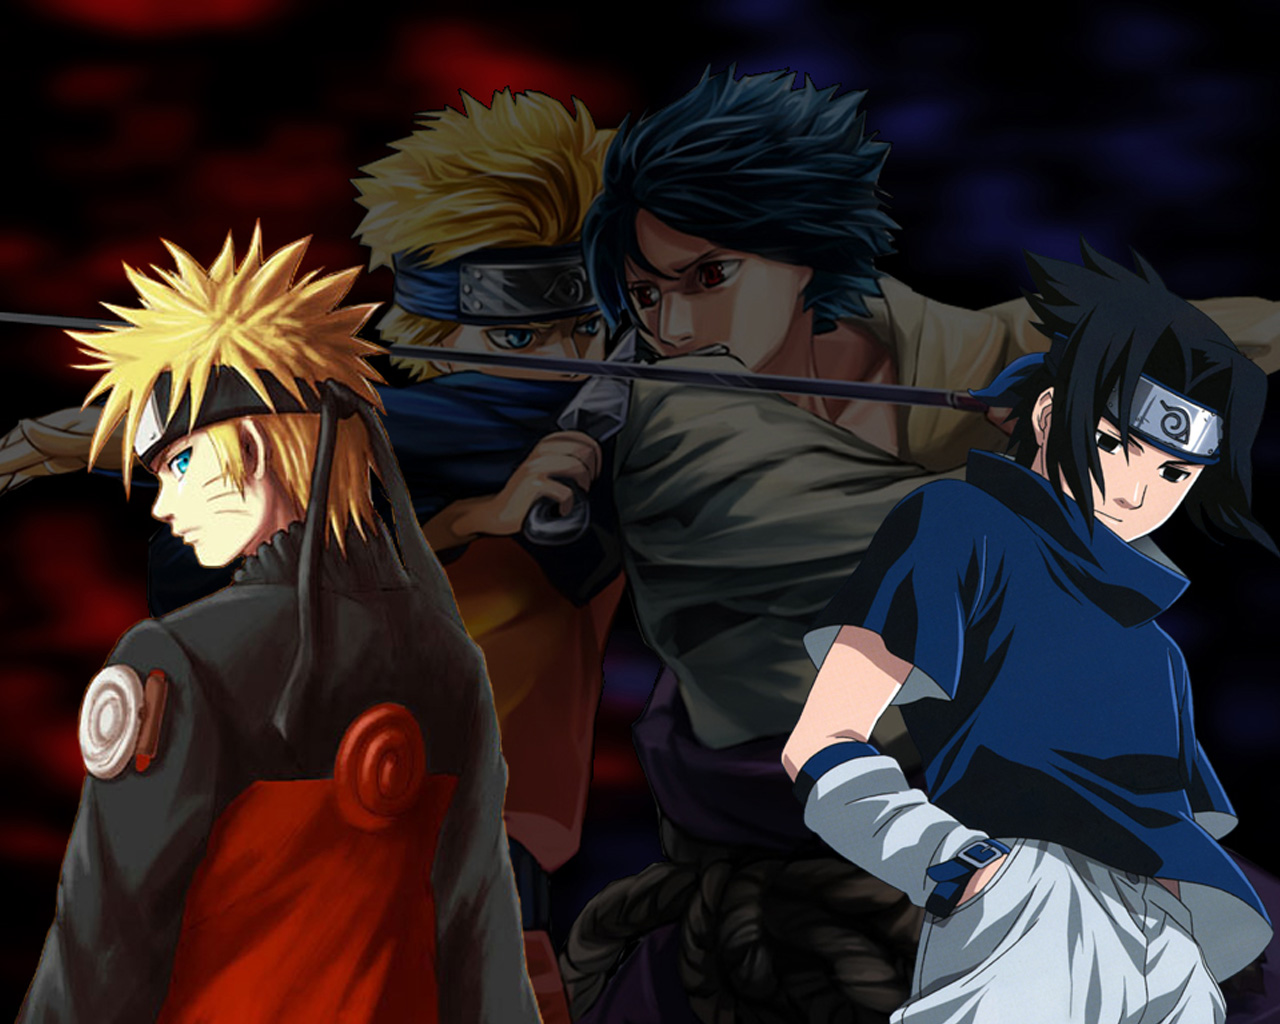 WallpapersKu Naruto vs Sasuke Wallpapers